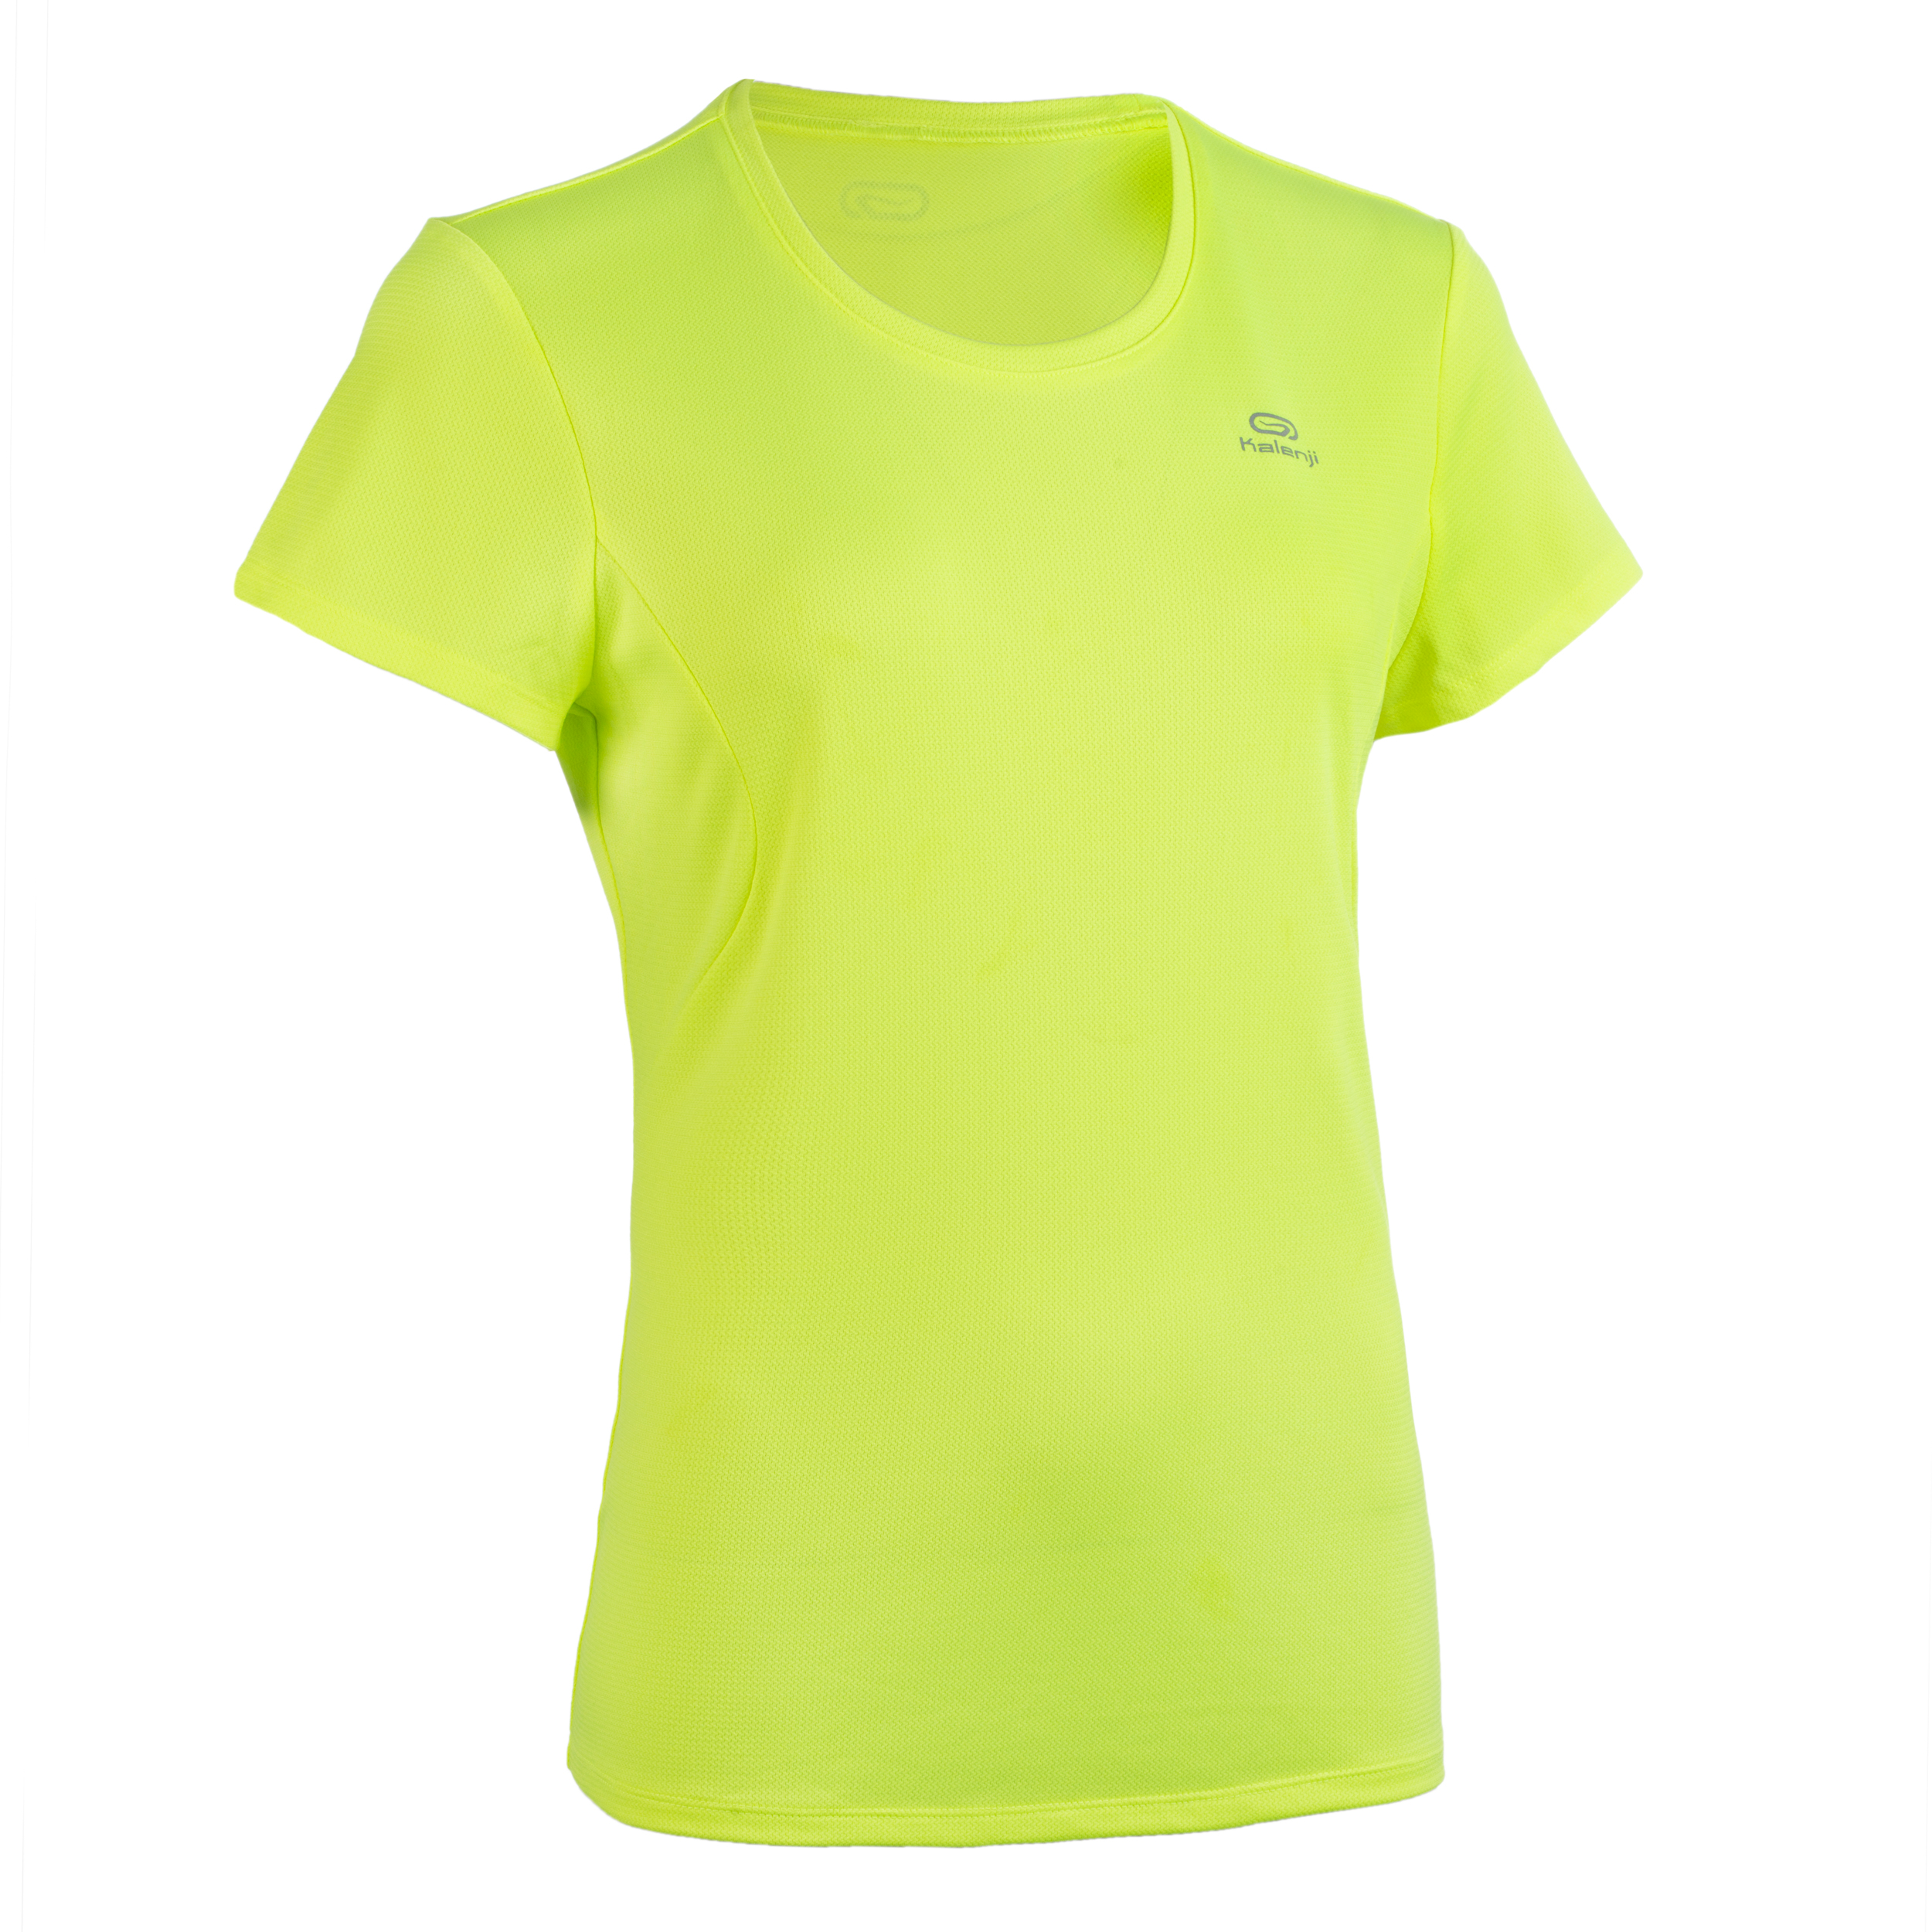 Tee Shirt Athlétisme femme club personnalisable jaune fluo pour les clubs  et collectivités